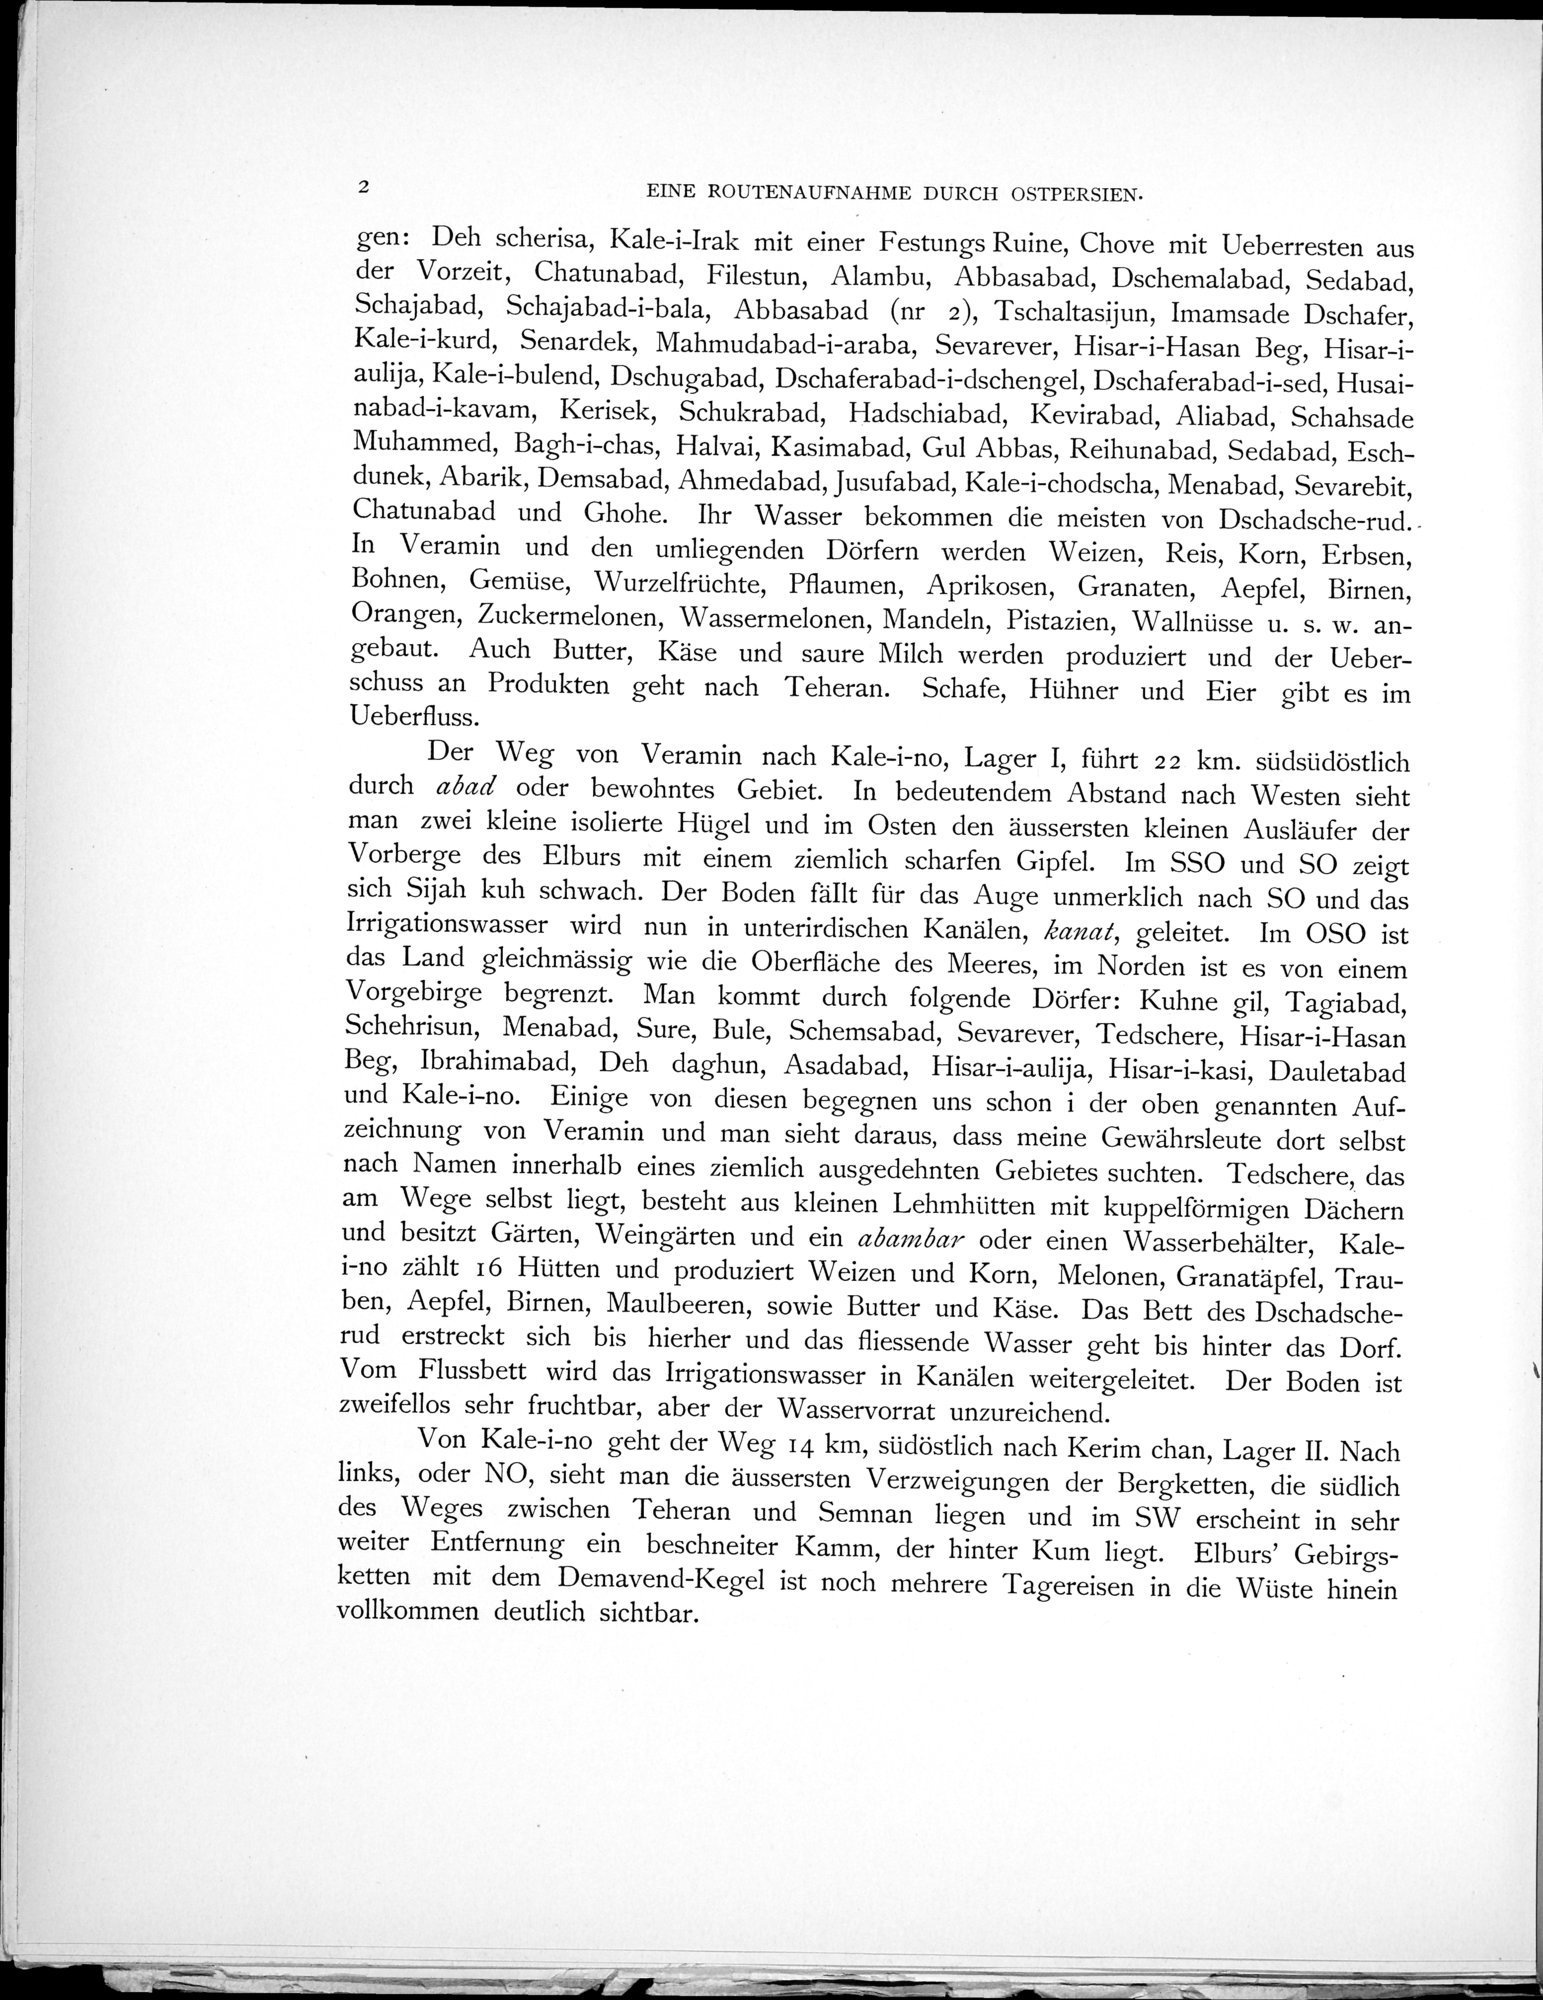 Eine Routenaufnahme durch Ostpersien : vol.1 / Page 18 (Grayscale High Resolution Image)